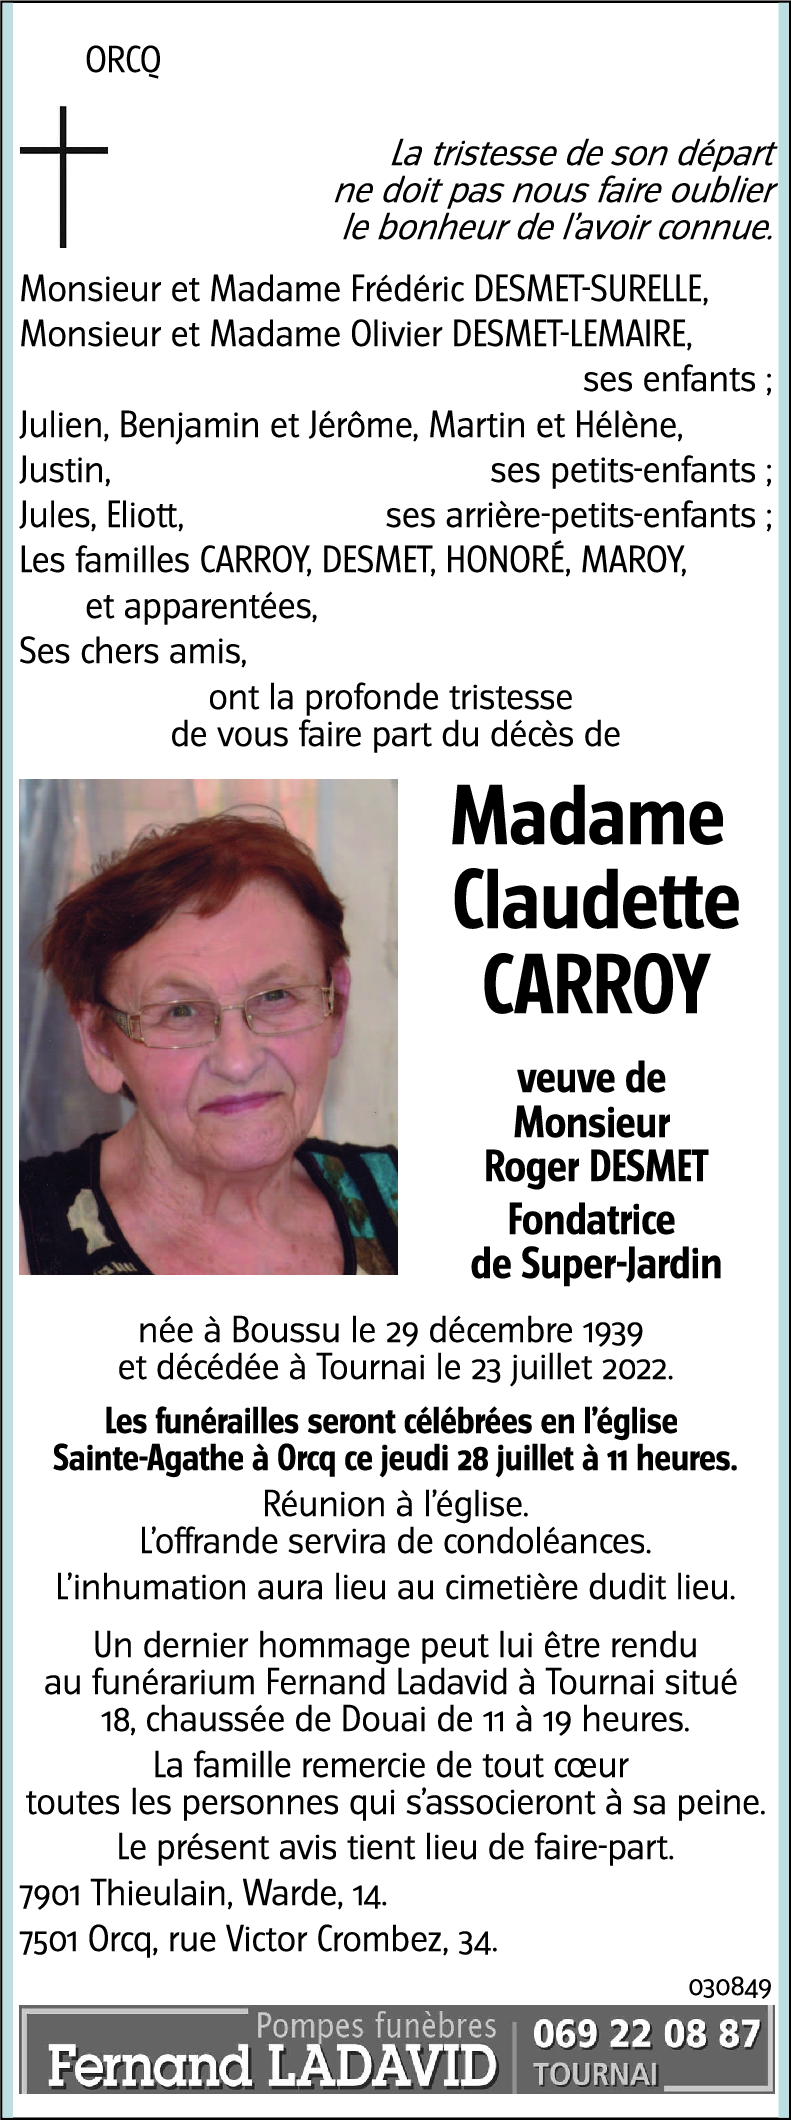 Claudette CARROY